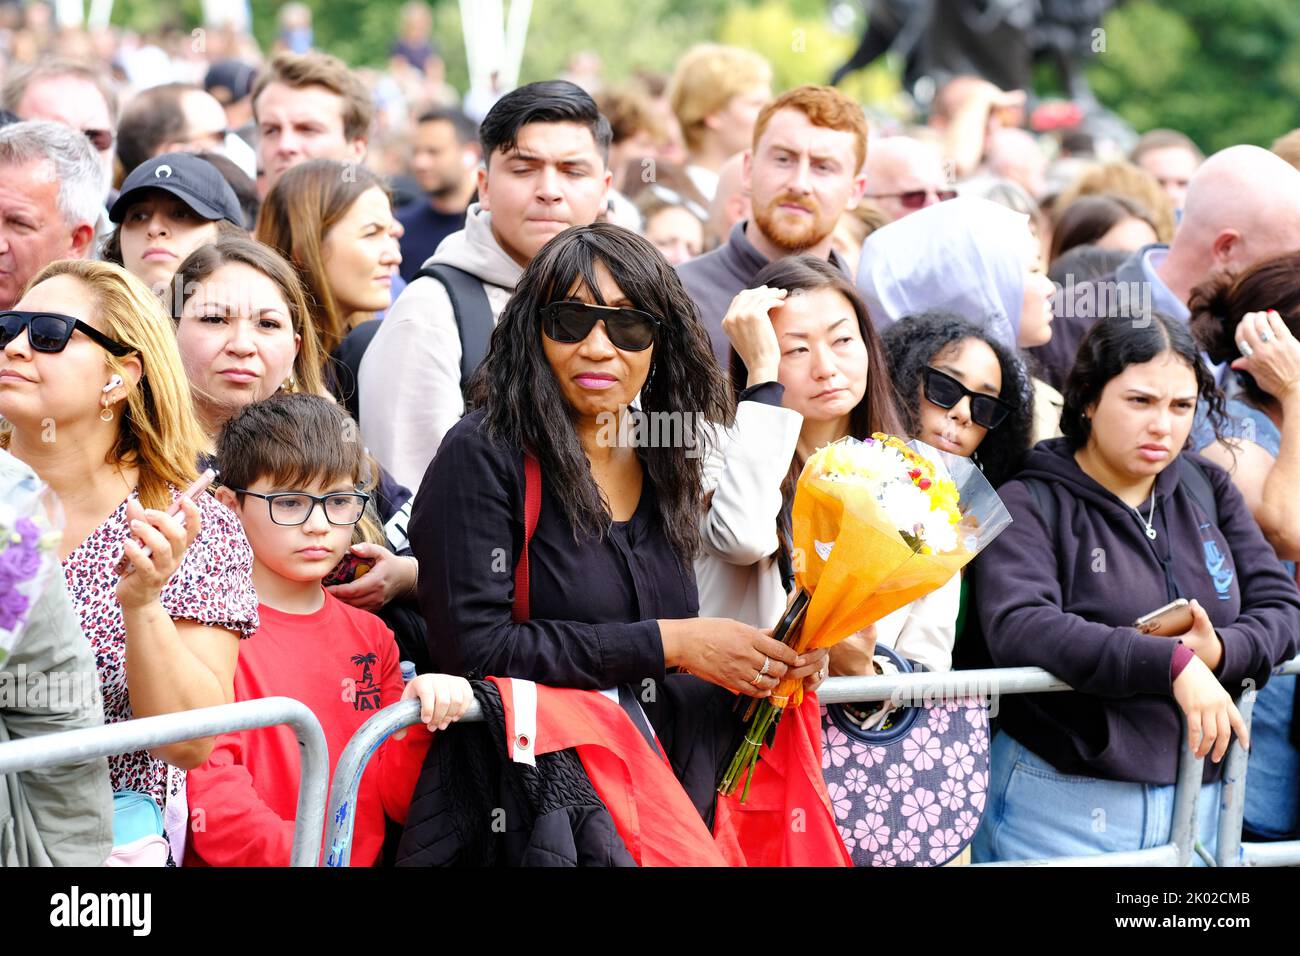 Buckingham Palace, Londres, Royaume-Uni – vendredi 9th septembre 2022 – de grandes foules se rassemblent avec des fleurs devant Buckingham Palace pour pleurer la mort de la reine Elizabeth II hier. Photo Steven May / Alamy Live News Banque D'Images